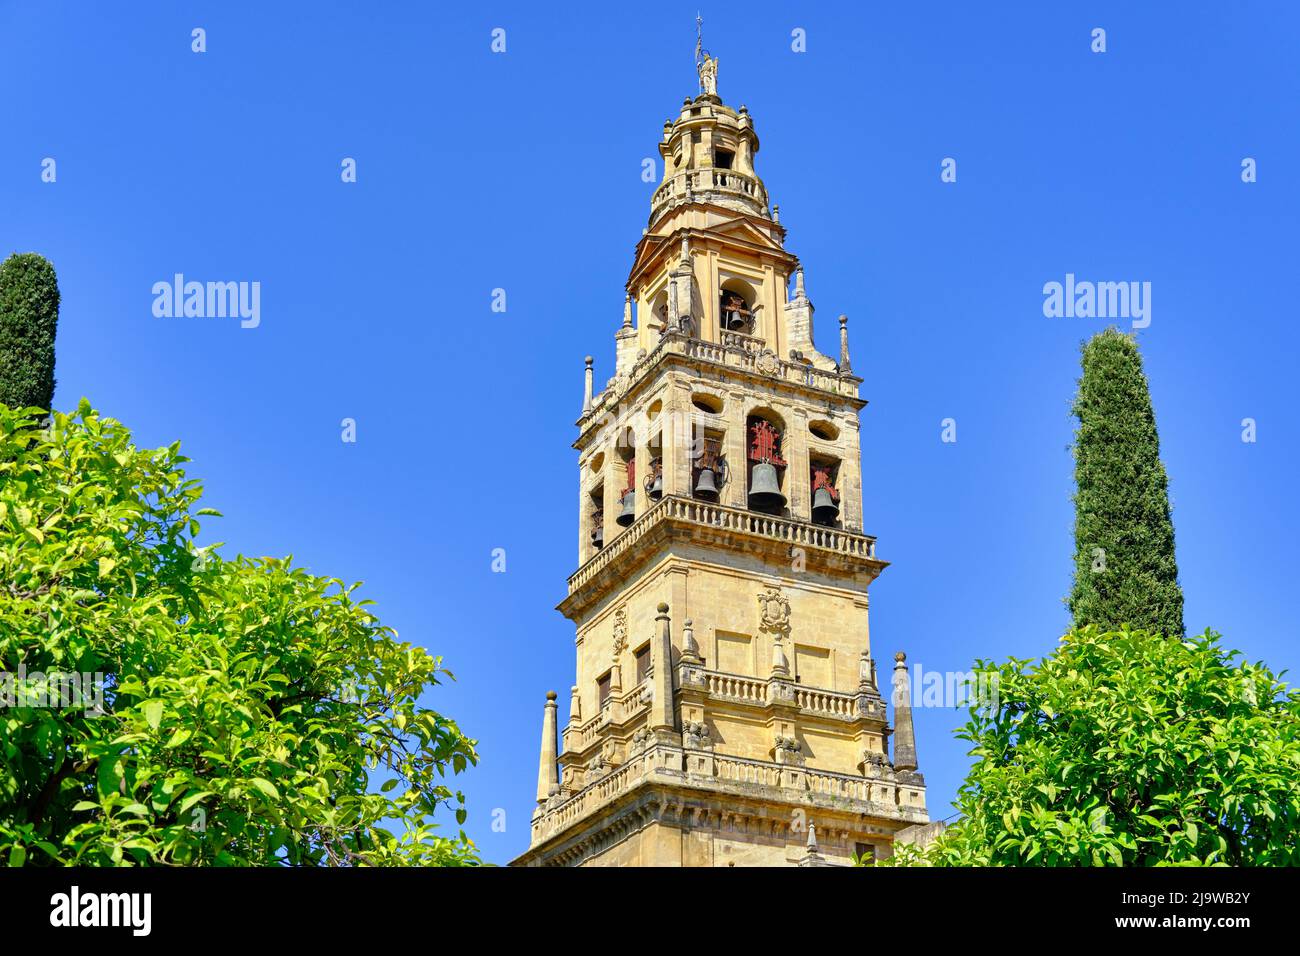 La tour de cloche de la Mezquita-Catedral (Mosquée-cathédrale) de Cordoue, site classé au patrimoine mondial de l'UNESCO. Patio de los Naranjos. Andalousie, Espagne Banque D'Images